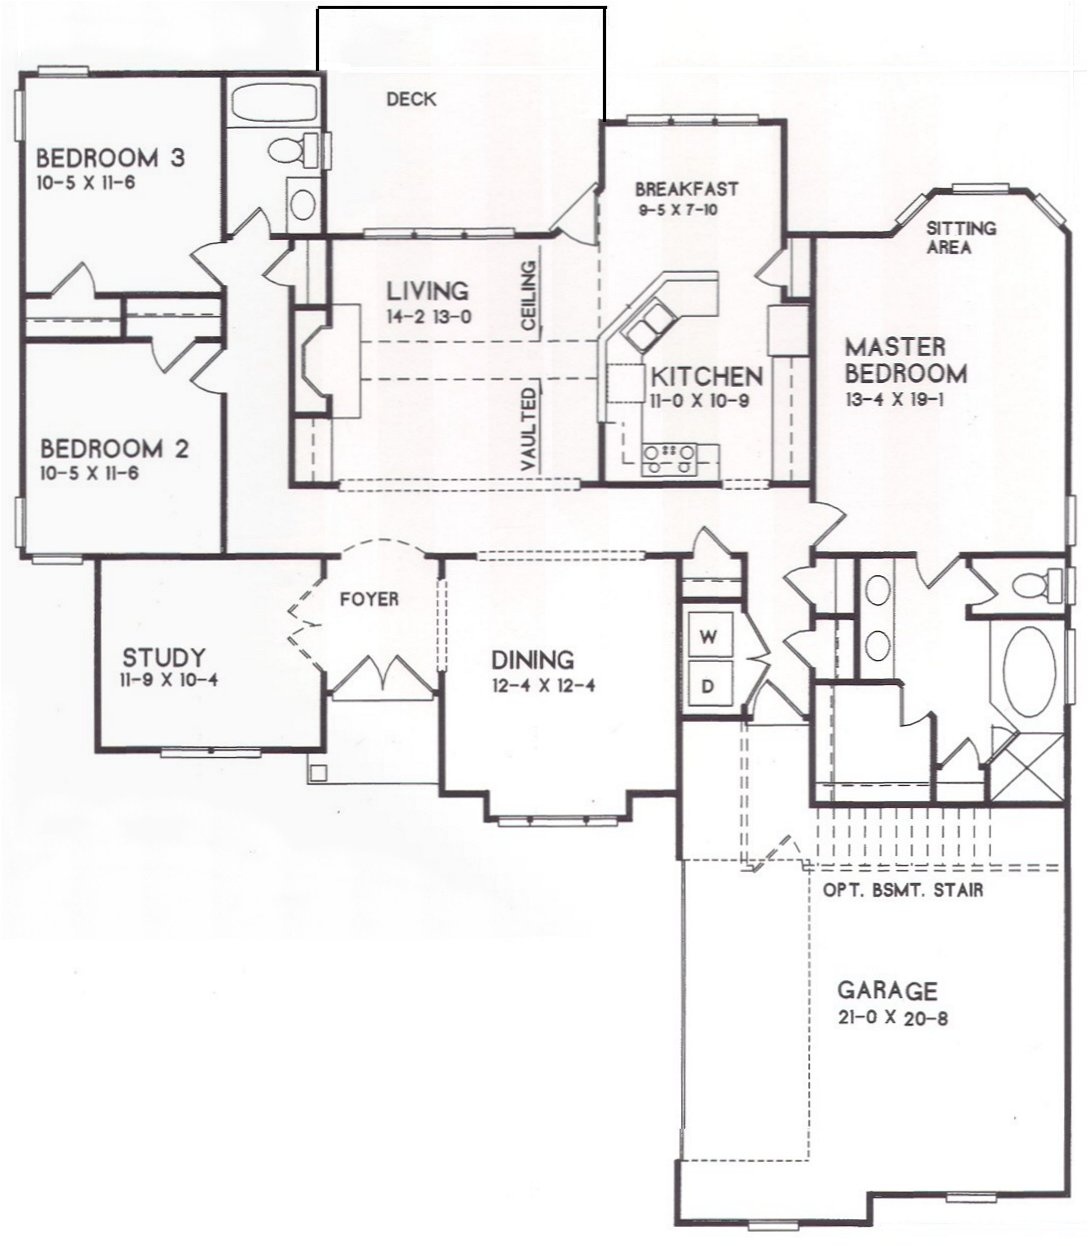 17-18 floor plan